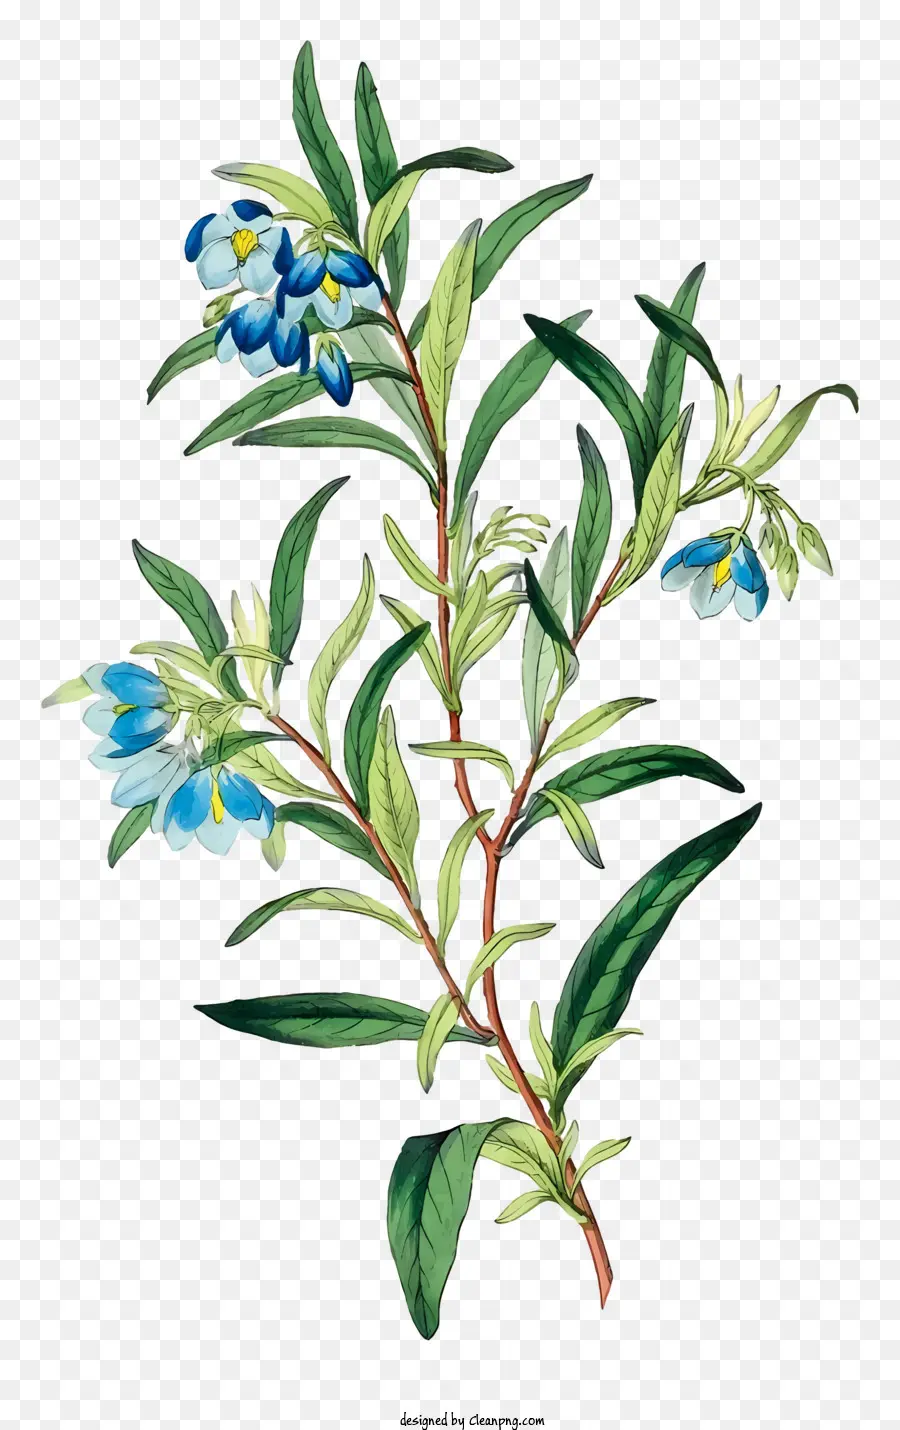 Zweig blau und lila Blüten symmetrisches Muster dunkelgrüne Blätter kleine Blätter - Bild des symmetrischen Zweigs mit blauen und lila Blüten